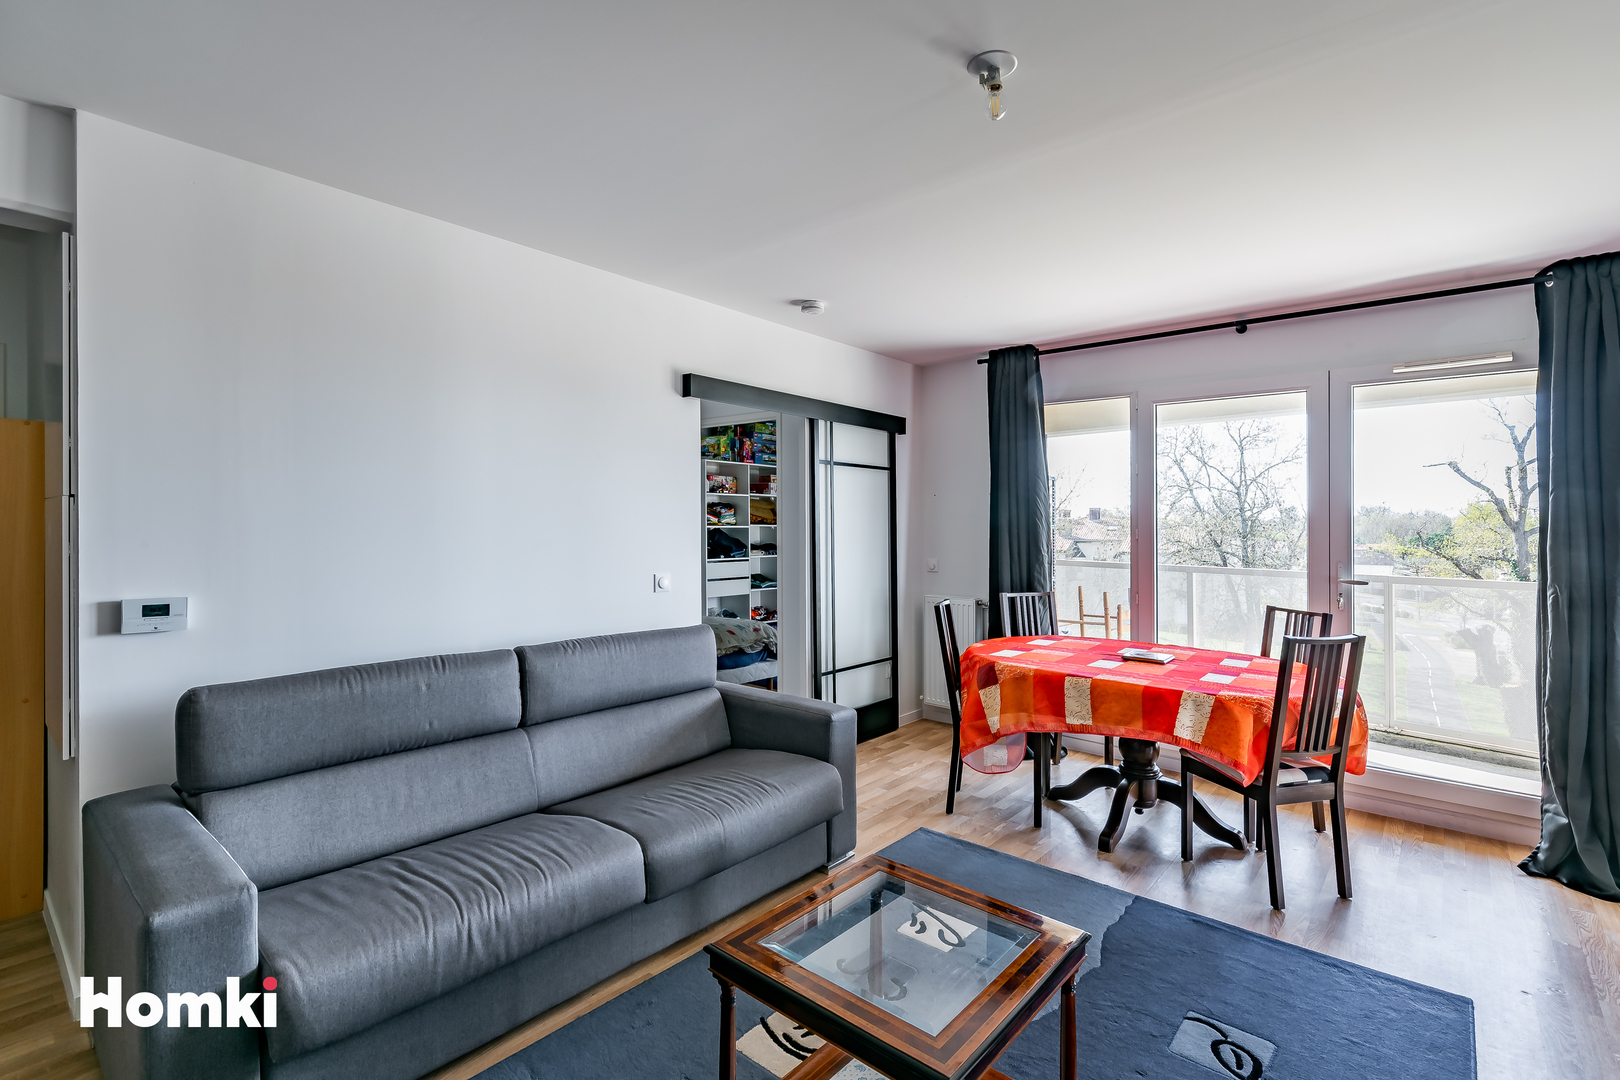 Homki - Vente Appartement  de 64.0 m² à Bassens 33530